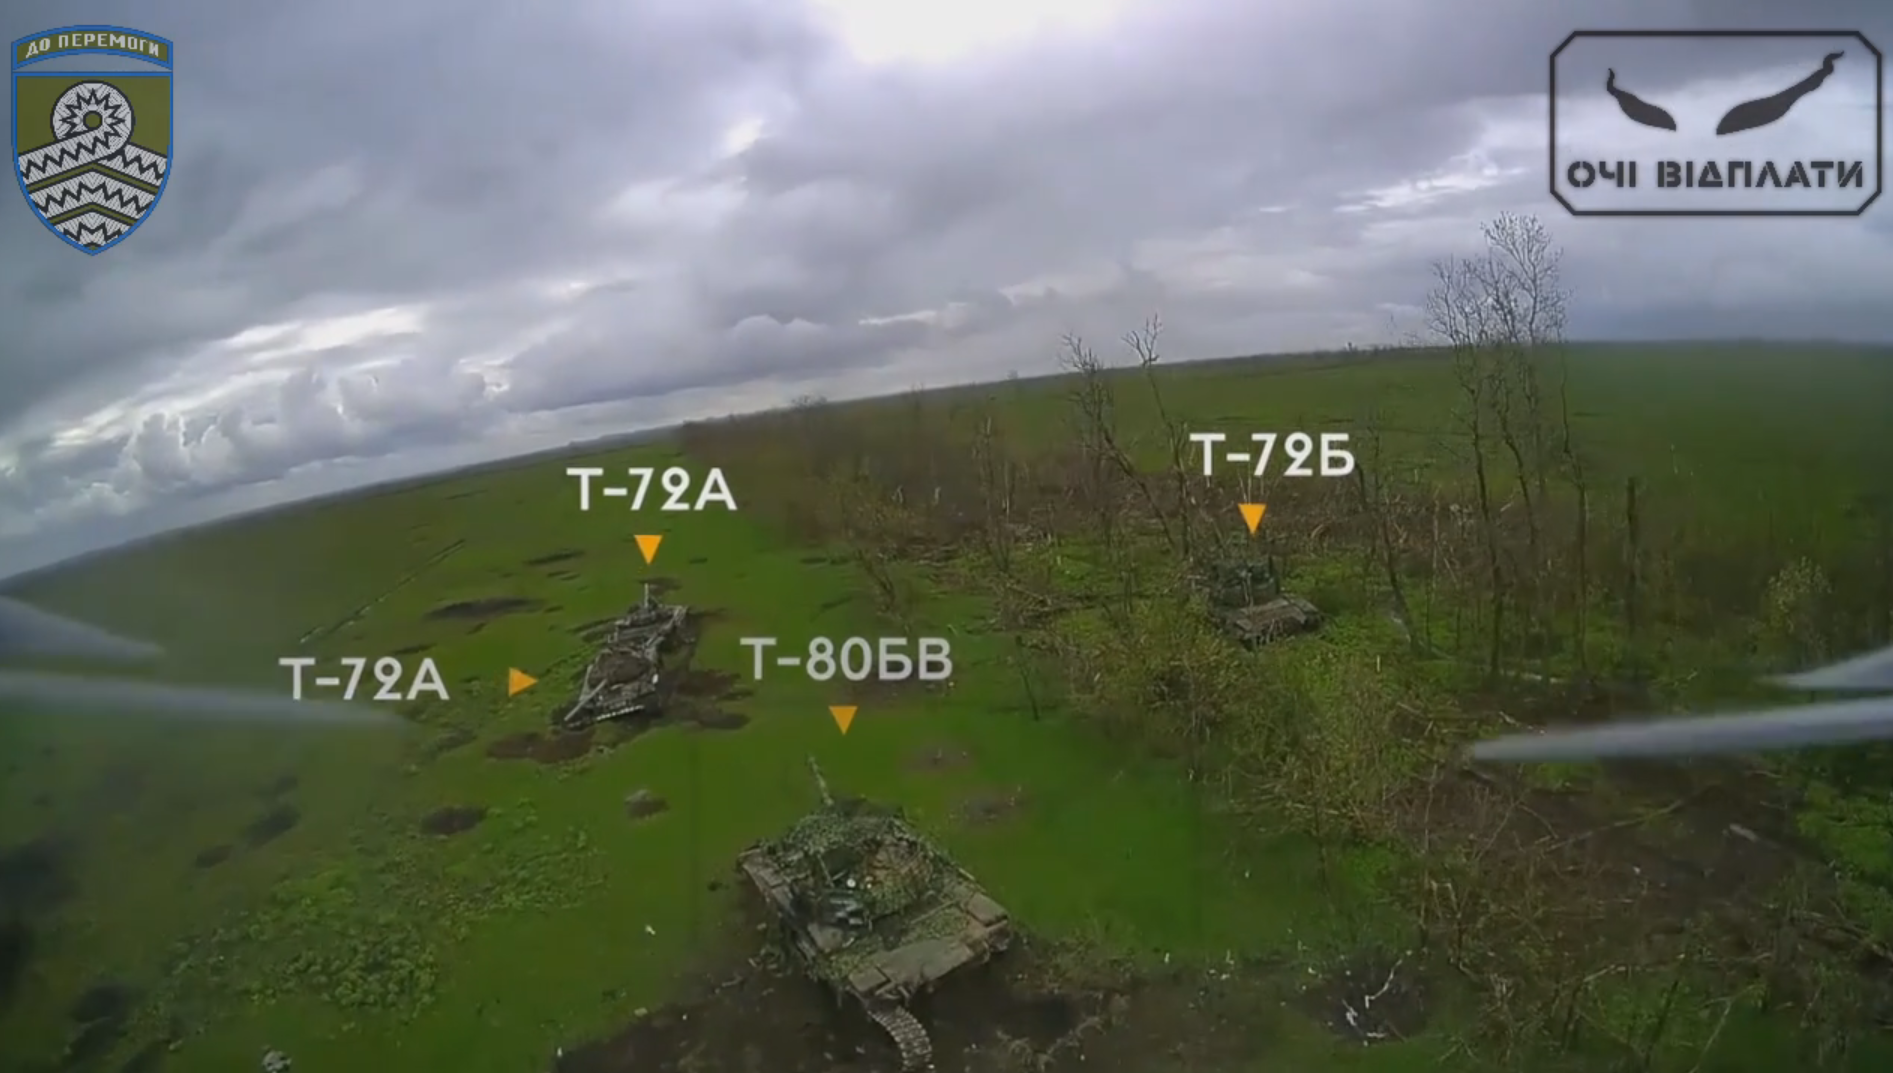 Drones FPV ucranianos por 1.000 dólares impactan contra tres tanques rusos T-80BV, T-72A y T-72B valorados en varios millones de dólares